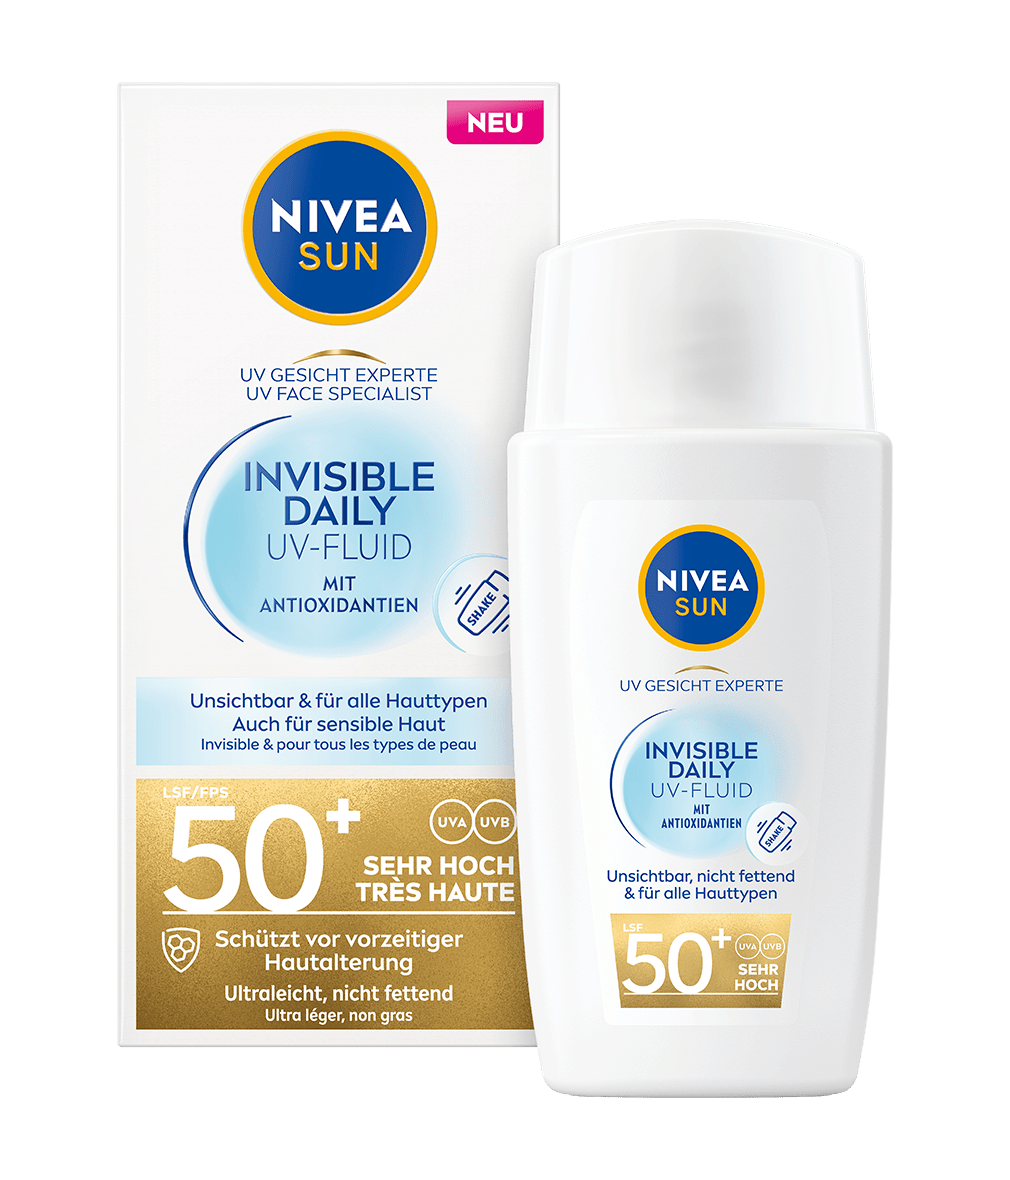 NIVEA SUN GESICHT Invisible Daily Fluid 40 ml